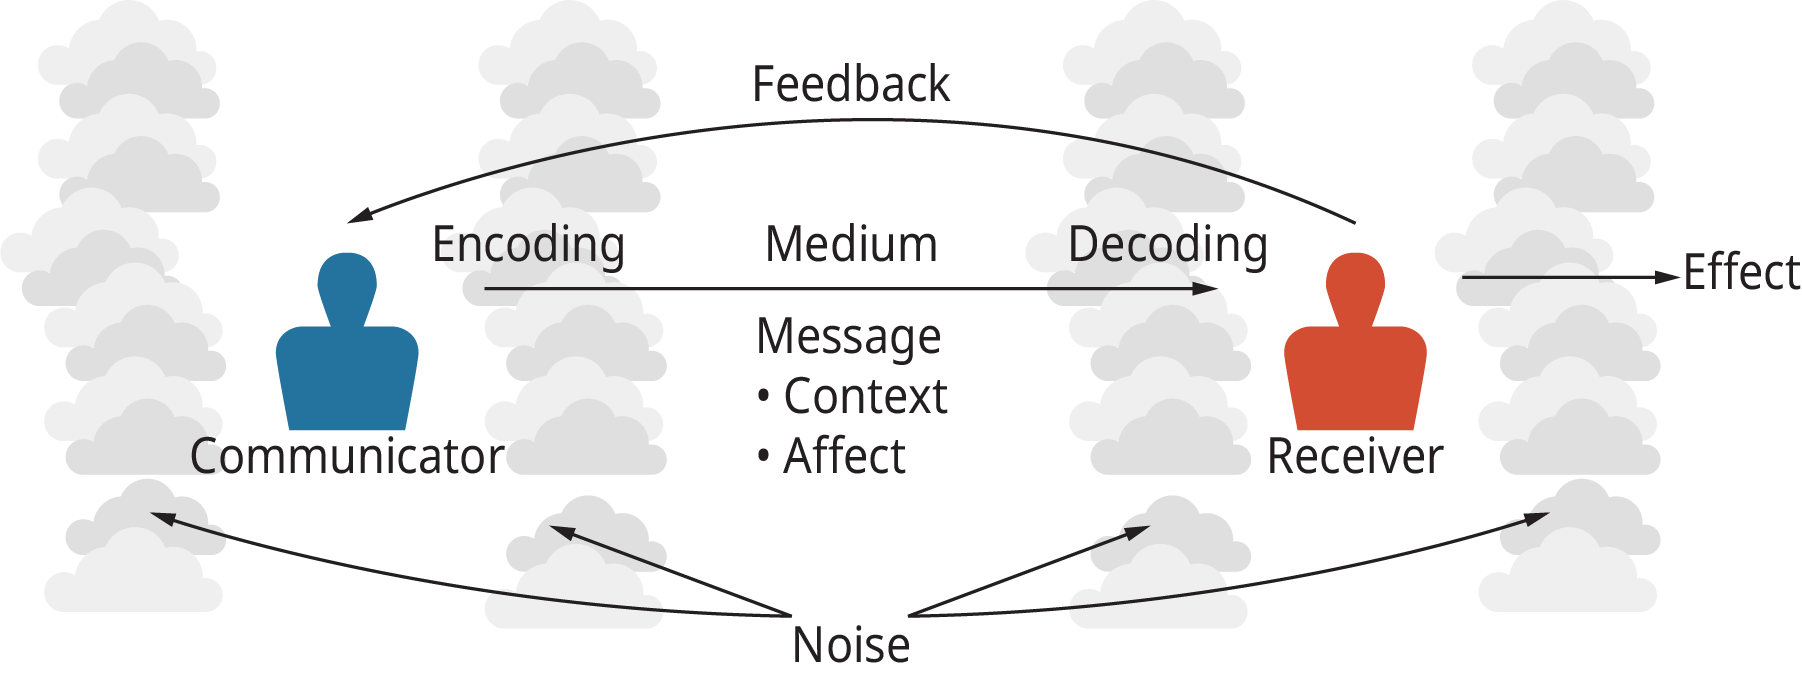 يوضح الرسم التوضيحي عملية نشر المعلومات من خلال النموذج الأساسي للاتصال.